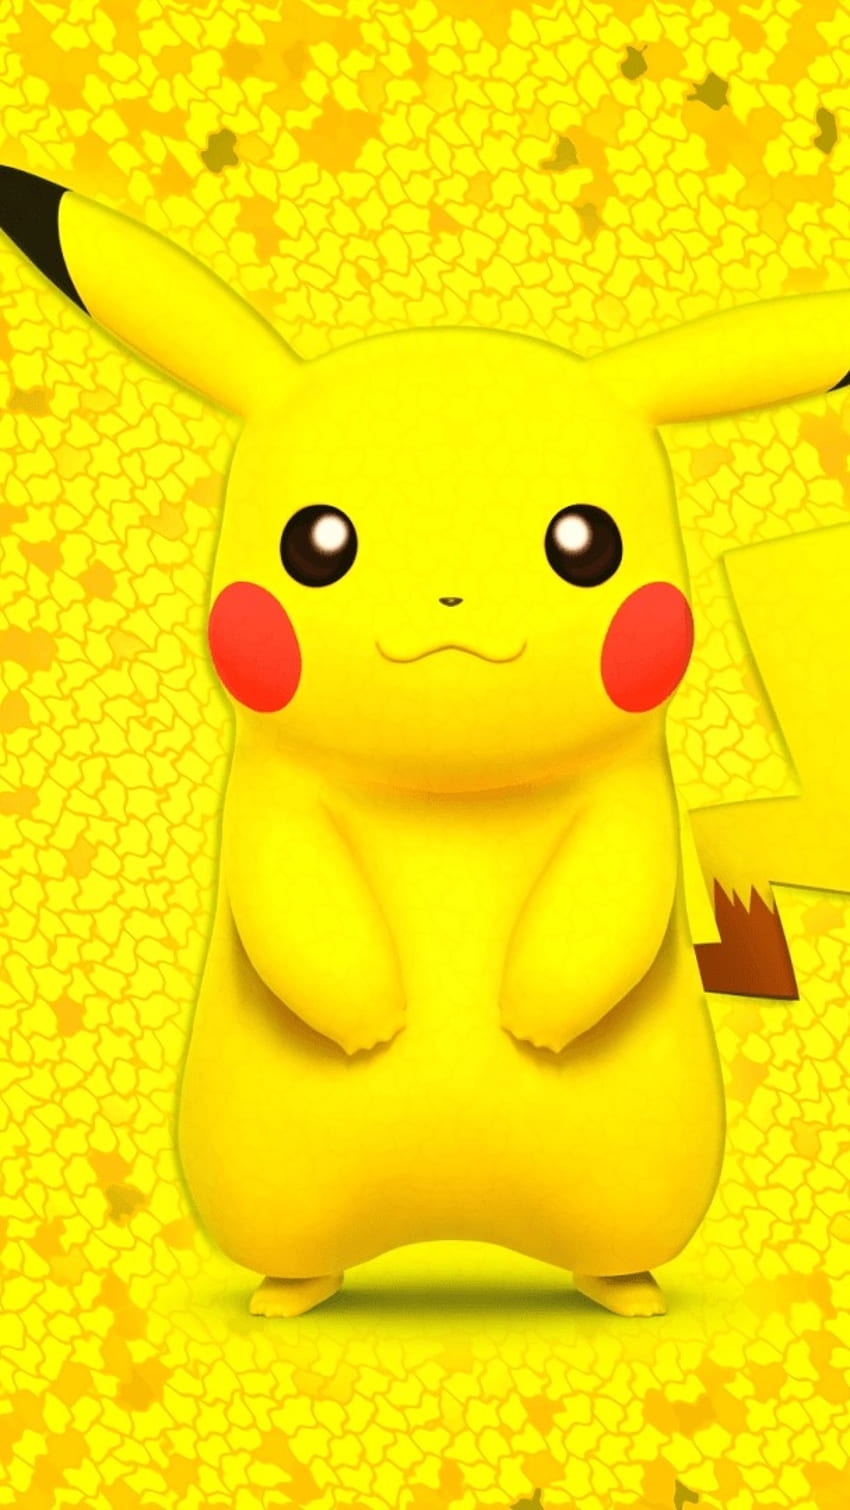 Hình nền Pokémon: Detective Pikachu - Bạn là fan hâm mộ của thế giới Pokémon? Hãy thử trang trí màn hình điện thoại của bạn bằng hình nền với chủ đề Detective Pikachu. Những hình ảnh đầy màu sắc và hấp dẫn chắc chắn sẽ làm cho màn hình điện thoại của bạn trở nên độc đáo và nổi bật hơn.